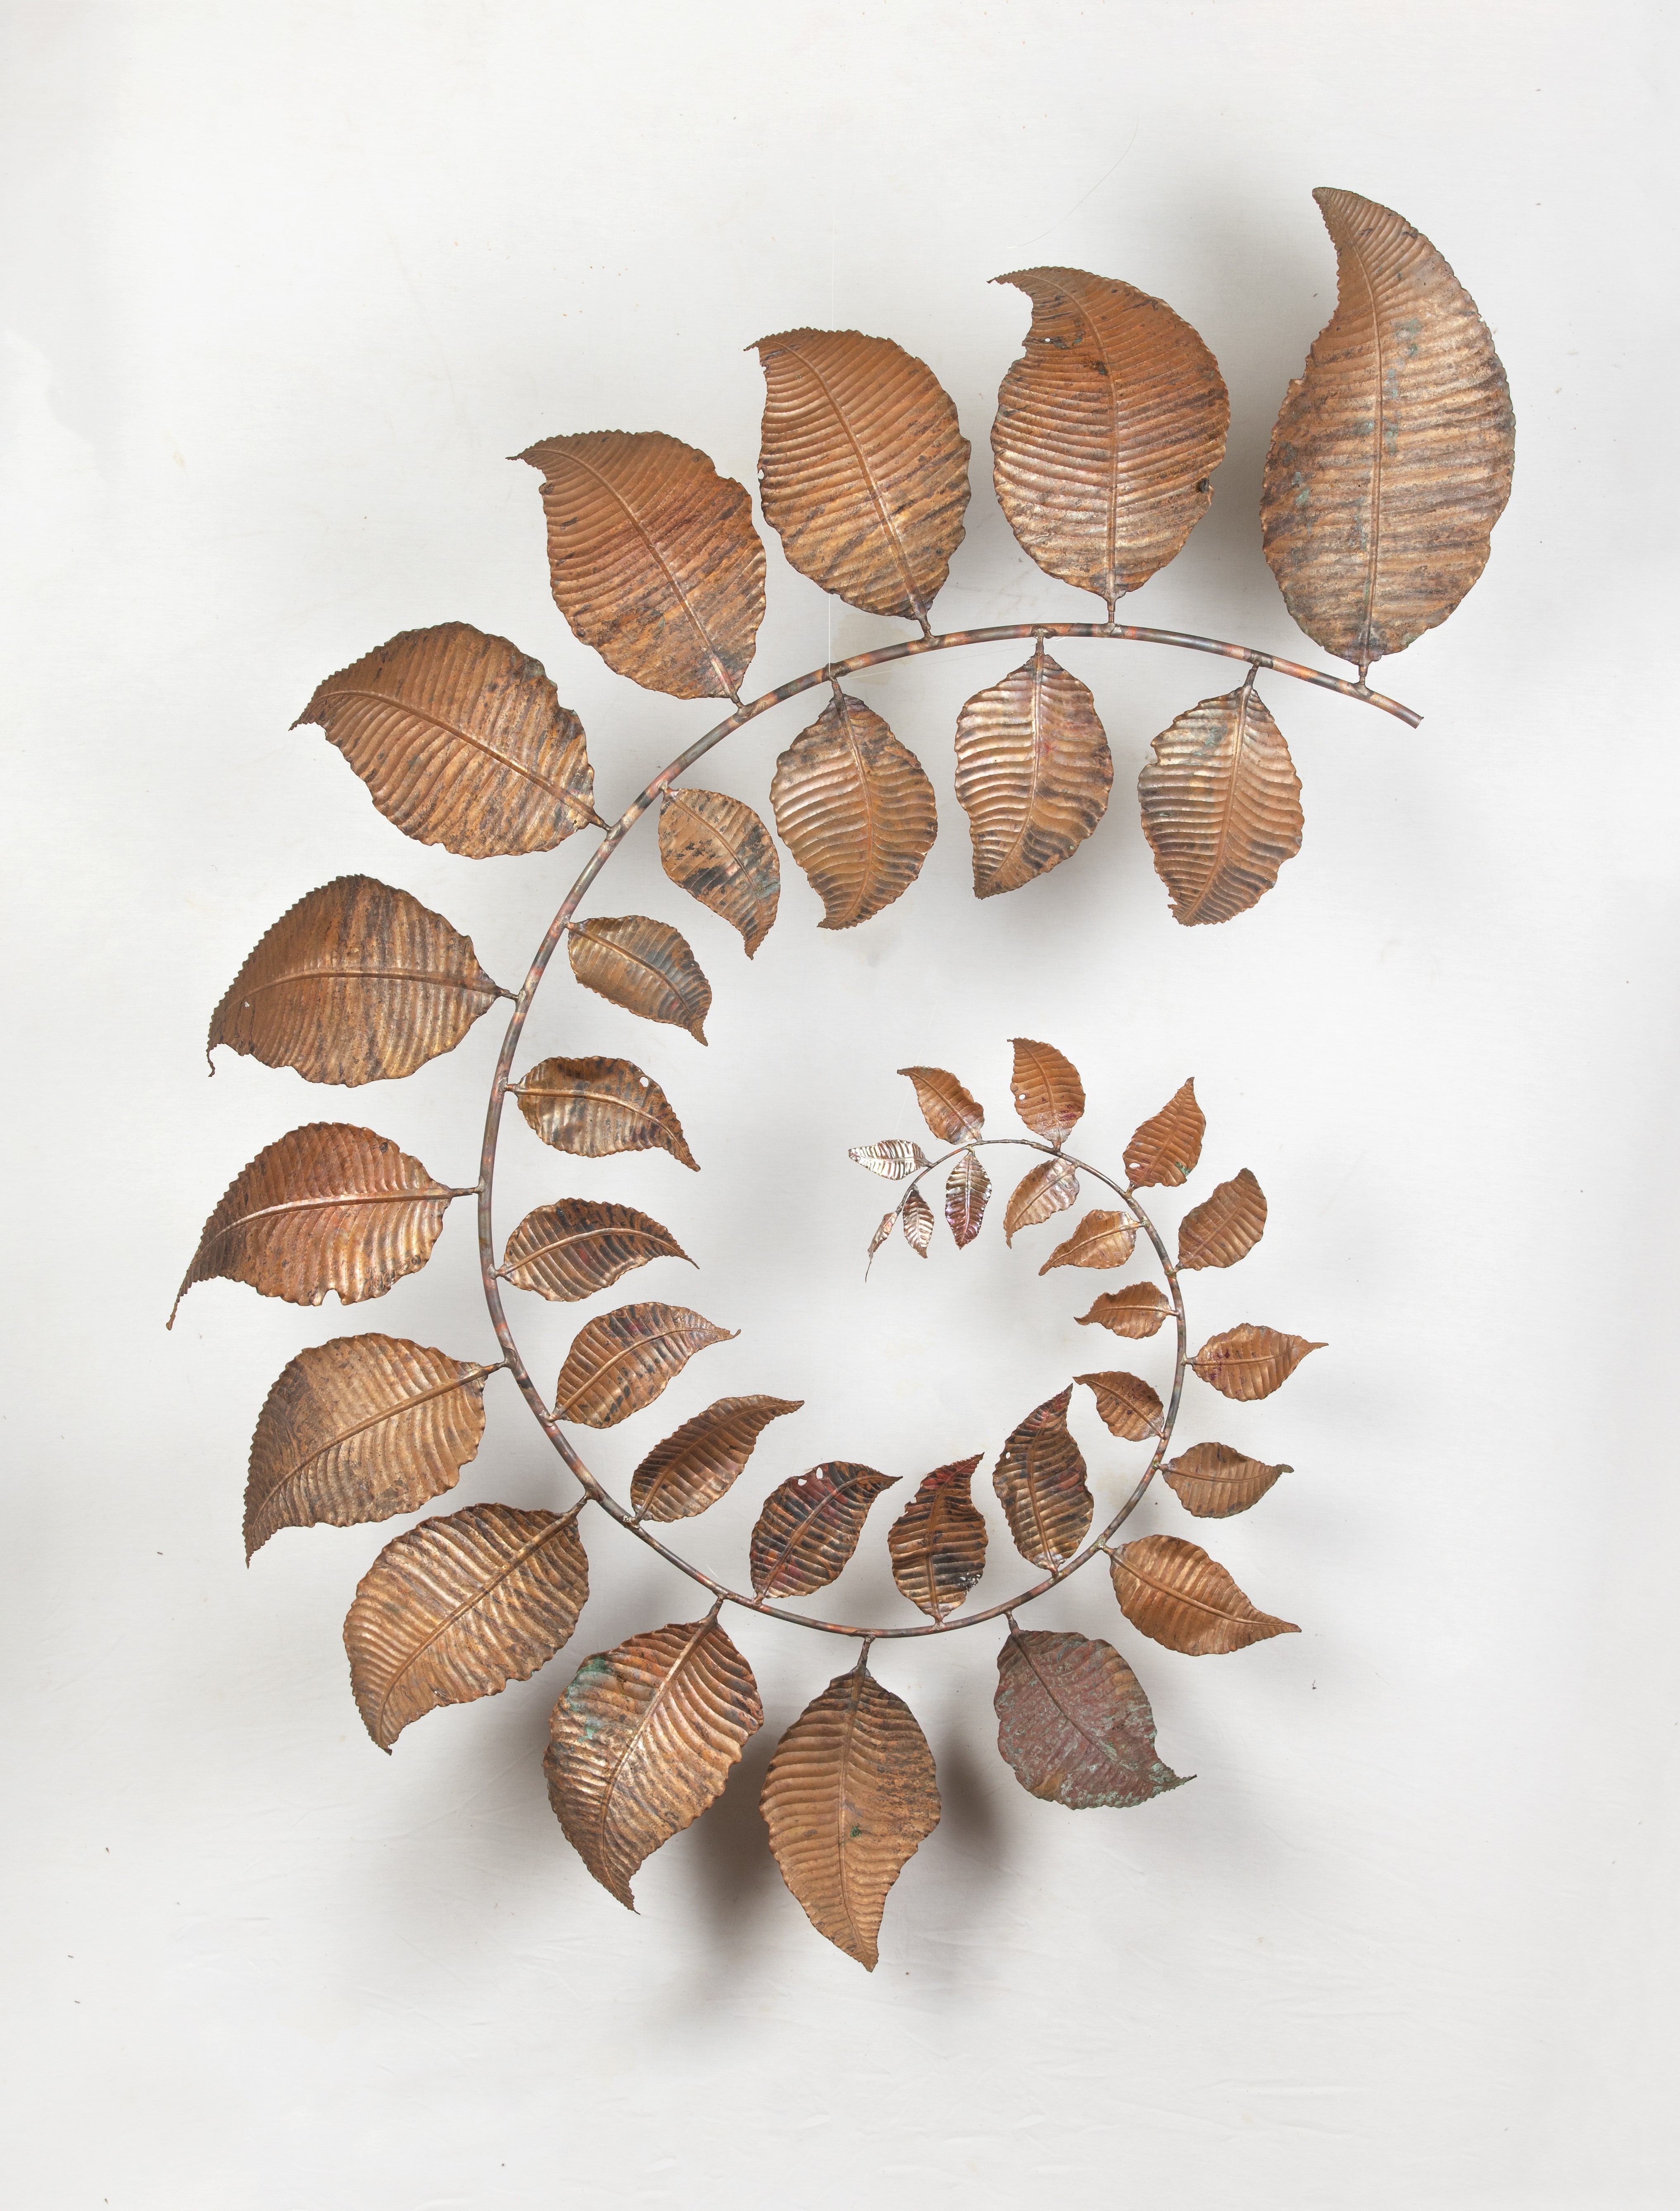 Spiral leafe by Sachira Lakshan